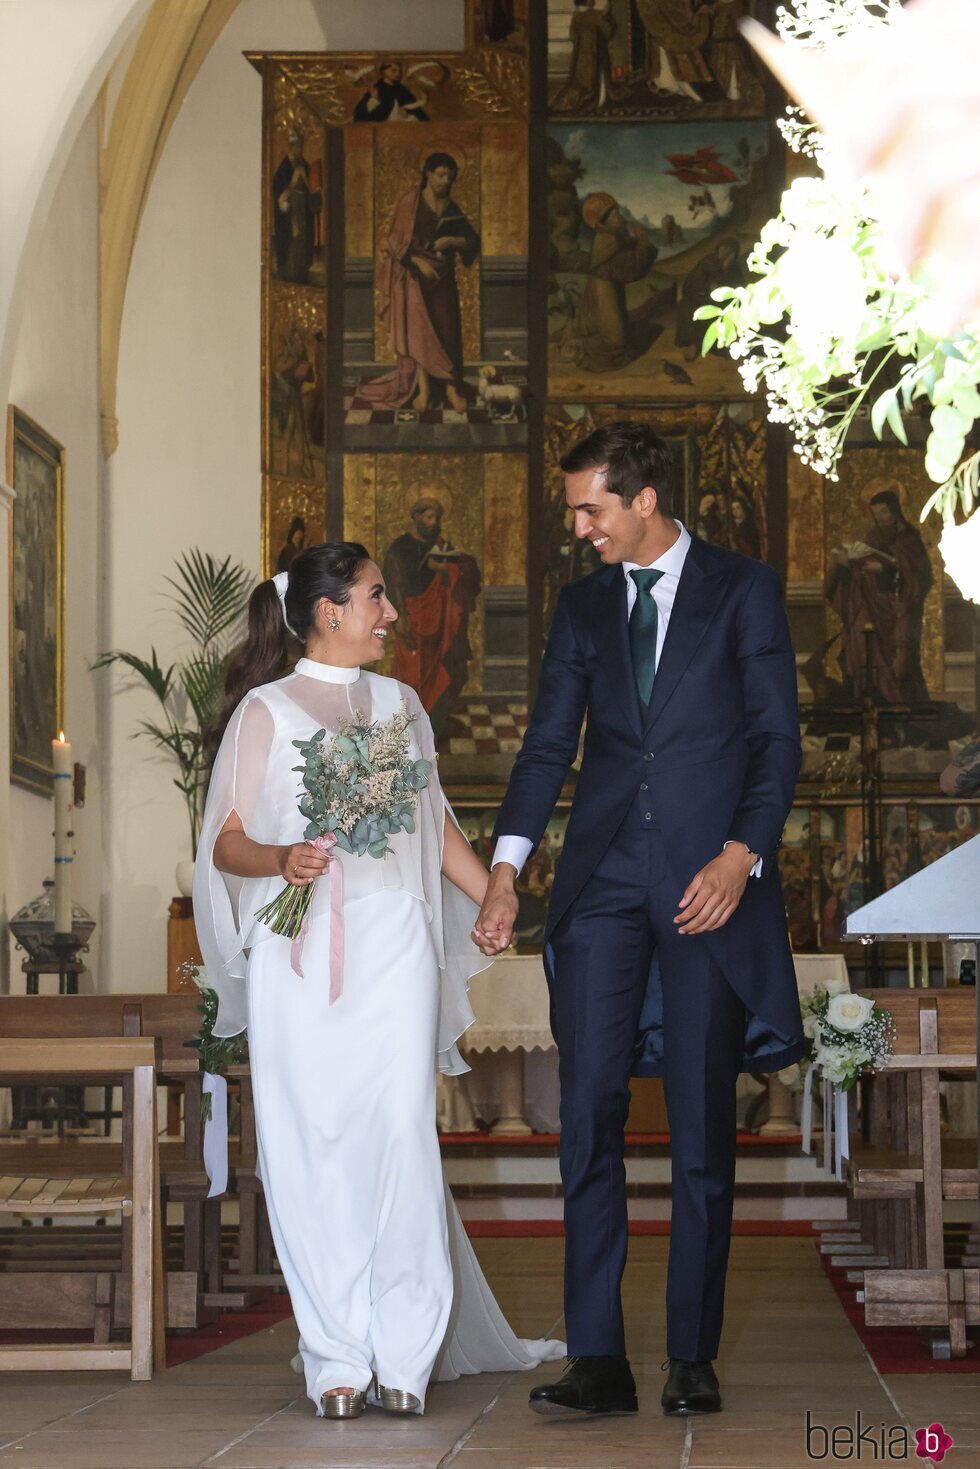 Lorenzo Díaz y Paloma de la Hoz en la iglesia después de contraer matrimonio